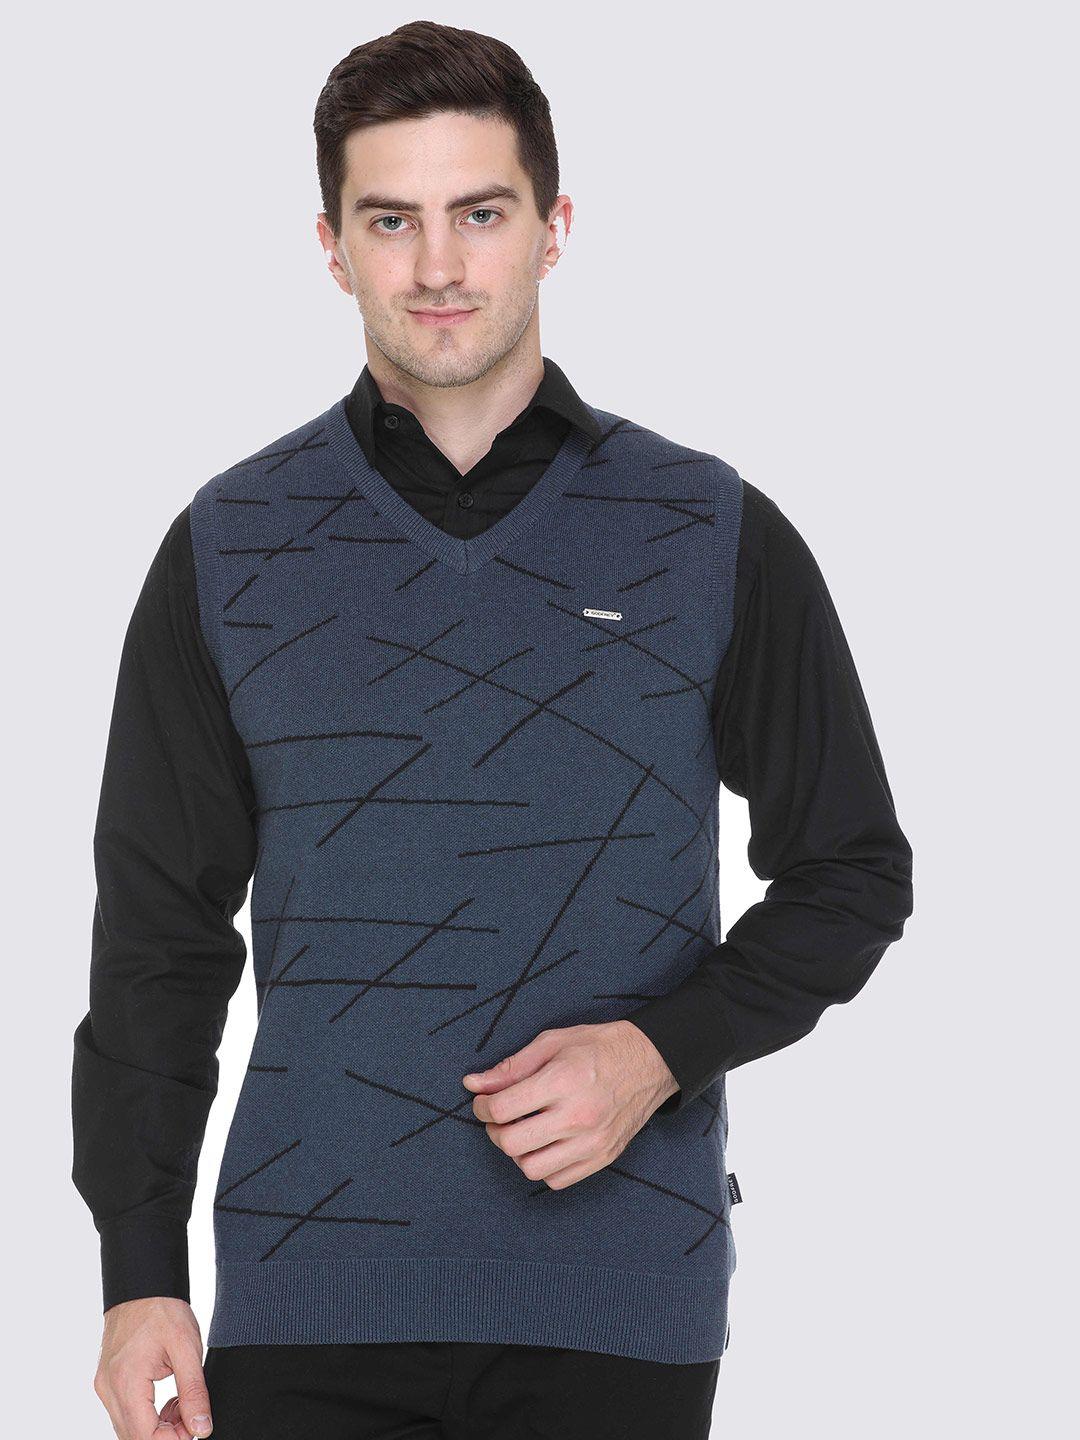 godfrey-men-geometric-wool-sweater-vest